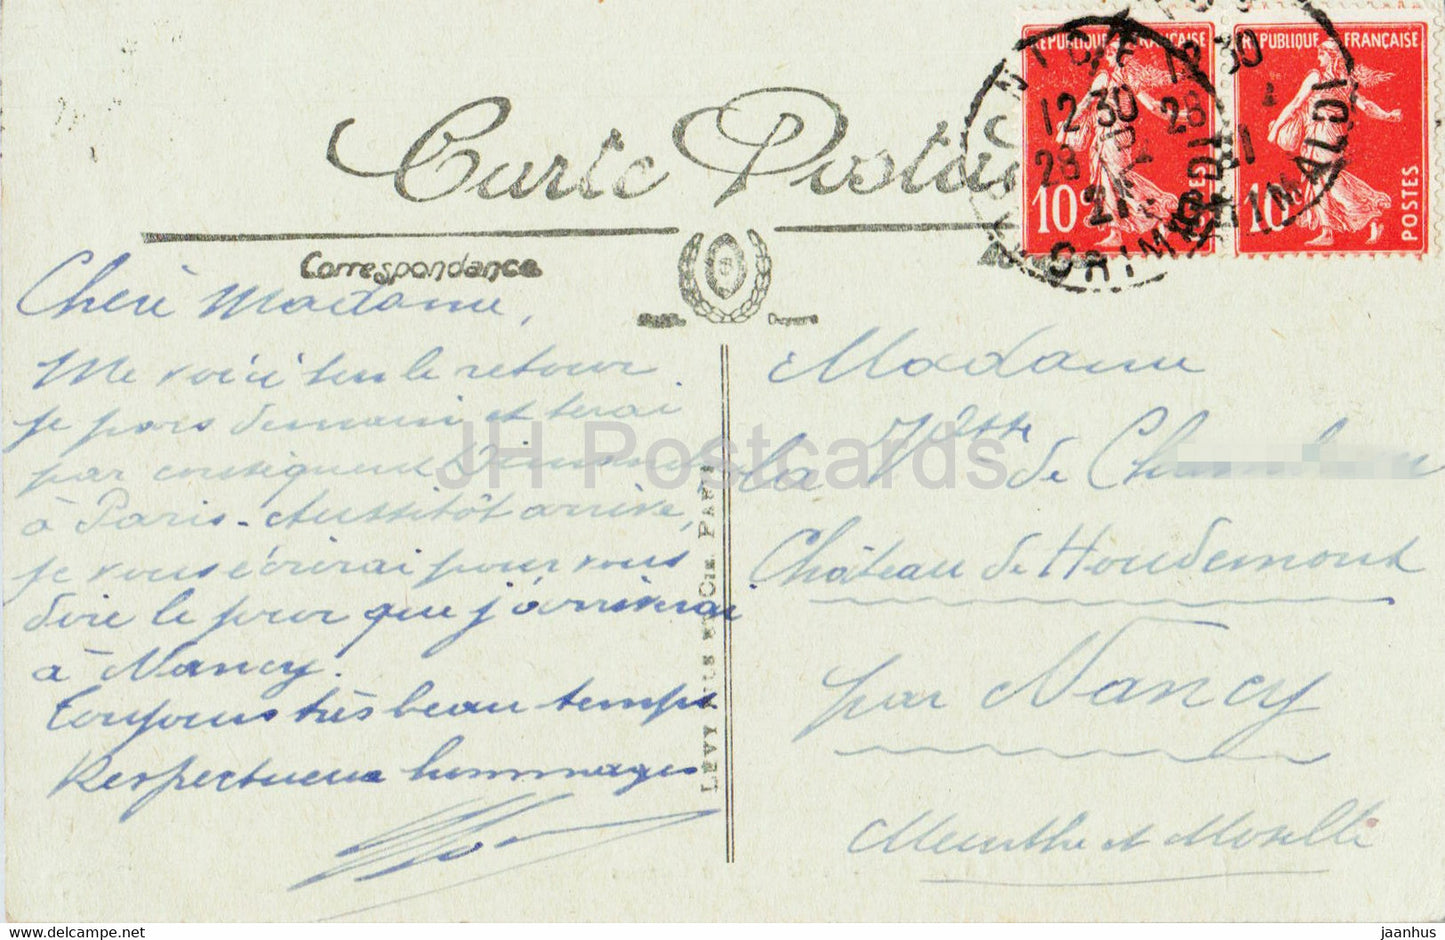 La Cote d'Azur a vol d'oiseau de Nice a Cannes - 26 - alte Postkarte - 1921 - Frankreich - gebraucht